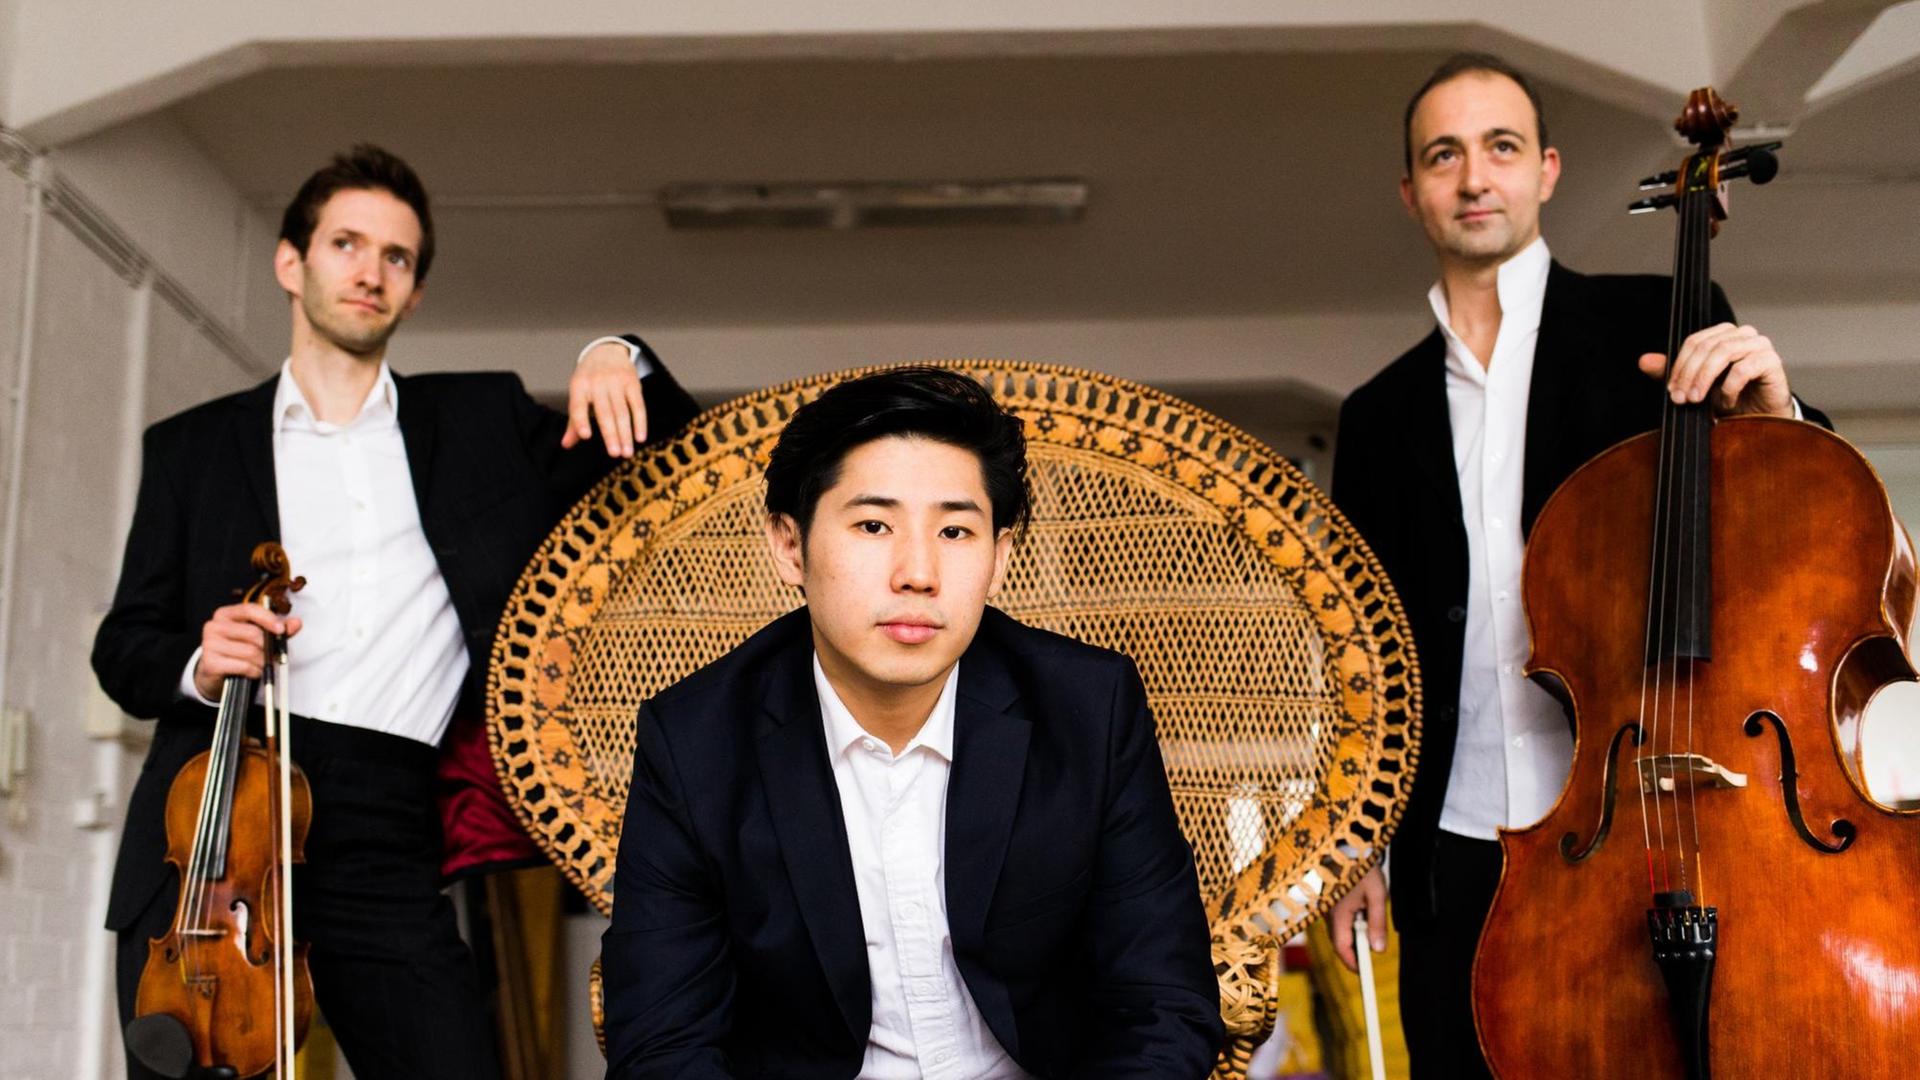 Pianist Jinsang Lee sitzt mittig auf einem großen Korbsessel, im Hintergrund stehen Geiger Mikhail Ovrutsky und Cellist Grigory Alumyan mit ihren Instrumenten in der Hand